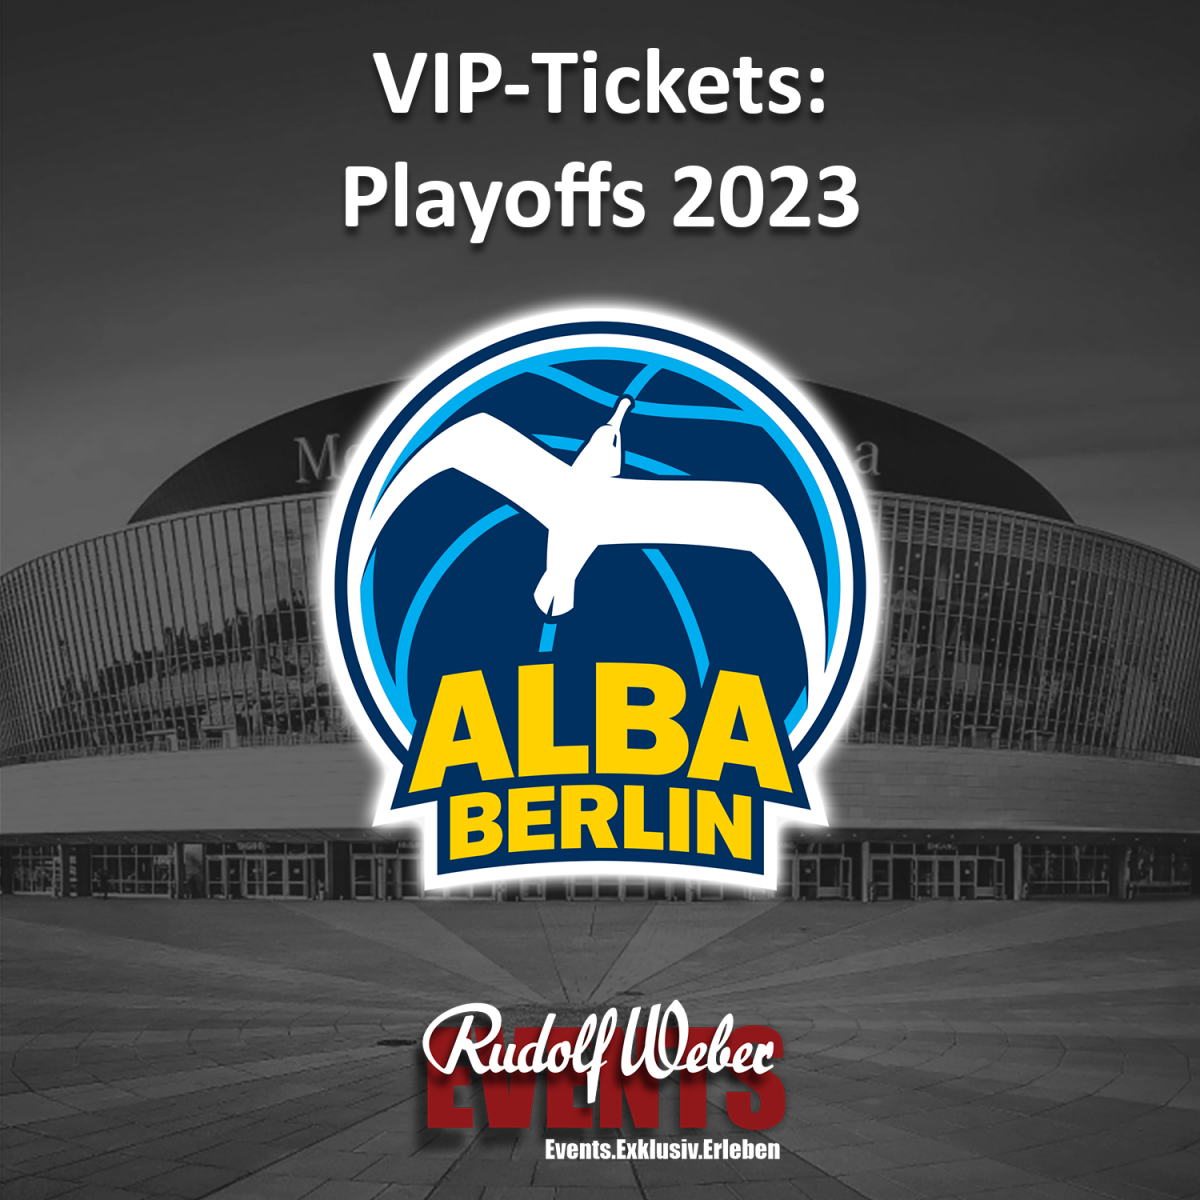 Die Playoff-Spiele von Alba Berlin als VIP erleben: Exklusive Tickets sichern